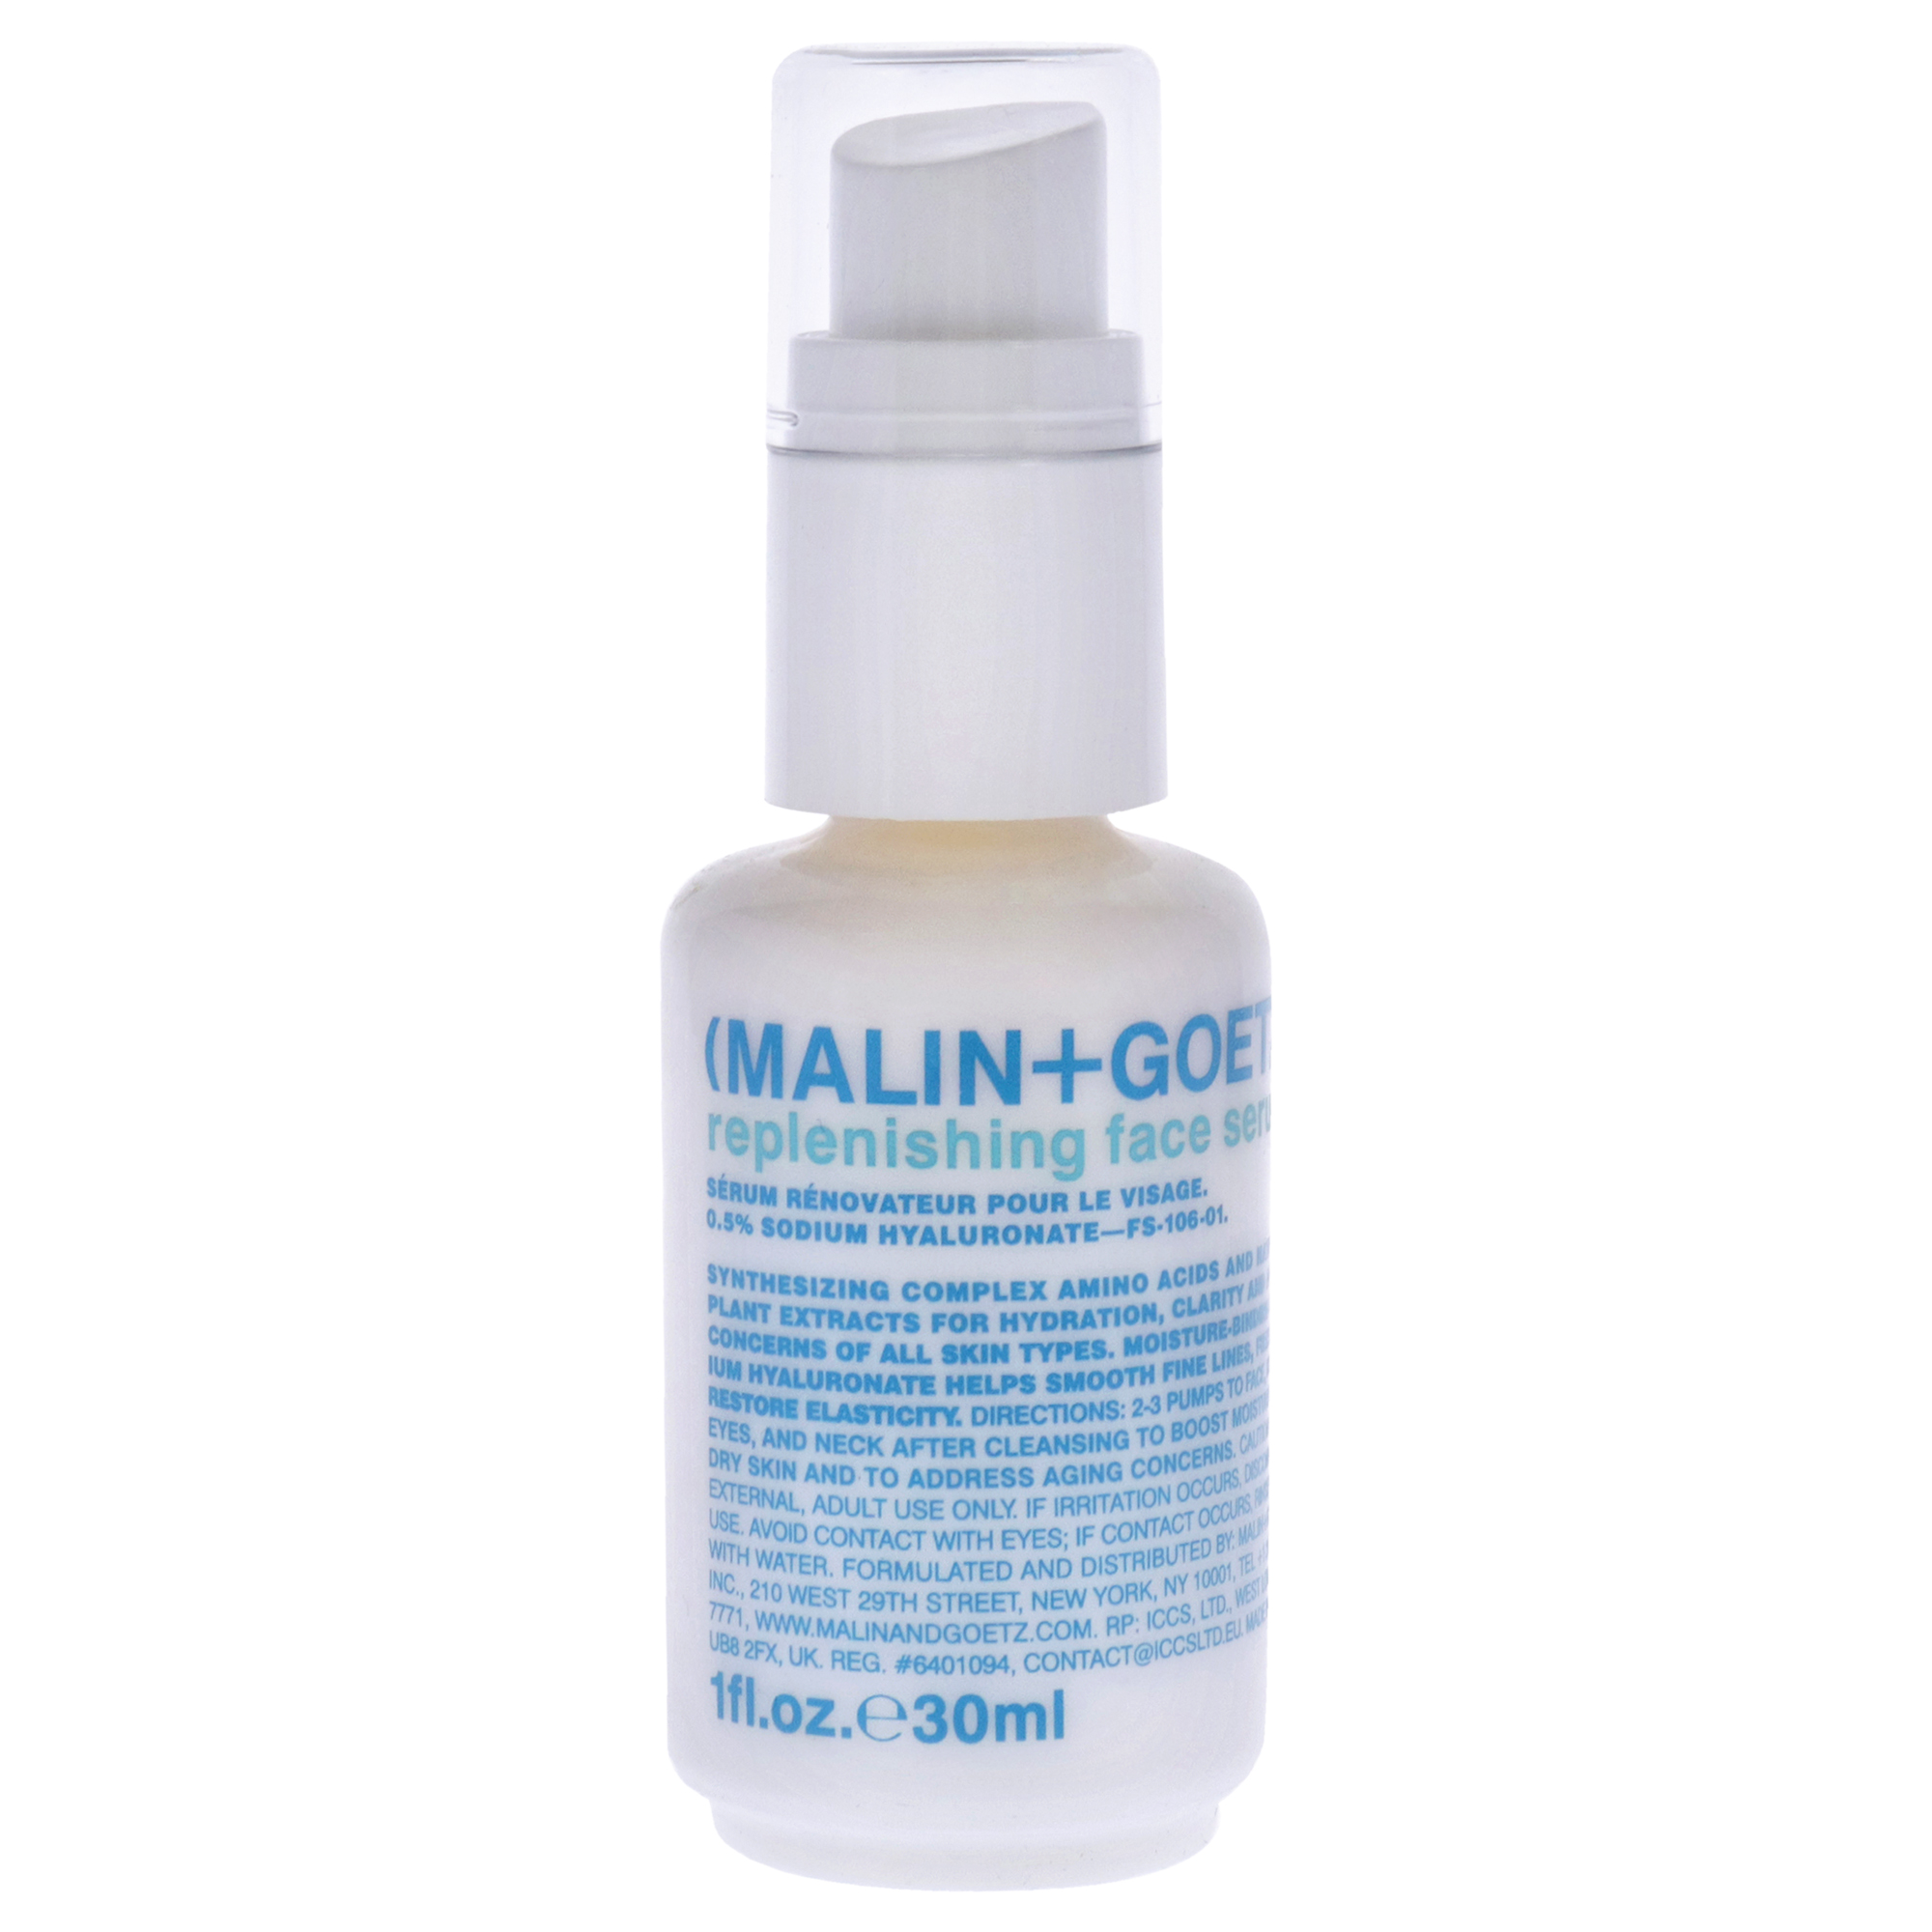 Malin+Goetz Replenishing Face Serum by Malin + Goetz for Women - 1 oz Serum